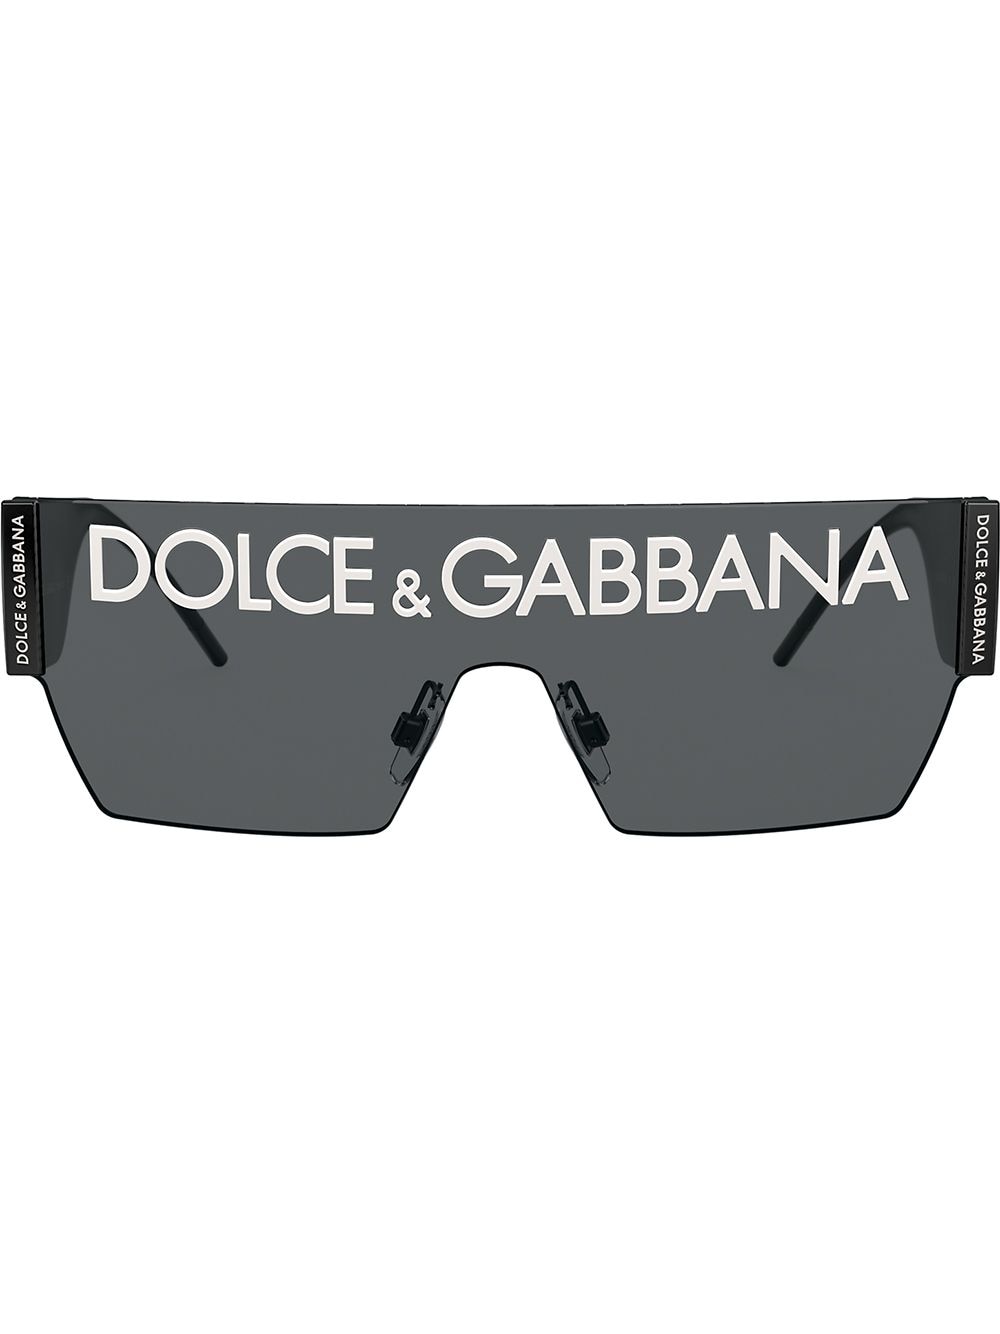 dolce gabbana logo sunglasses